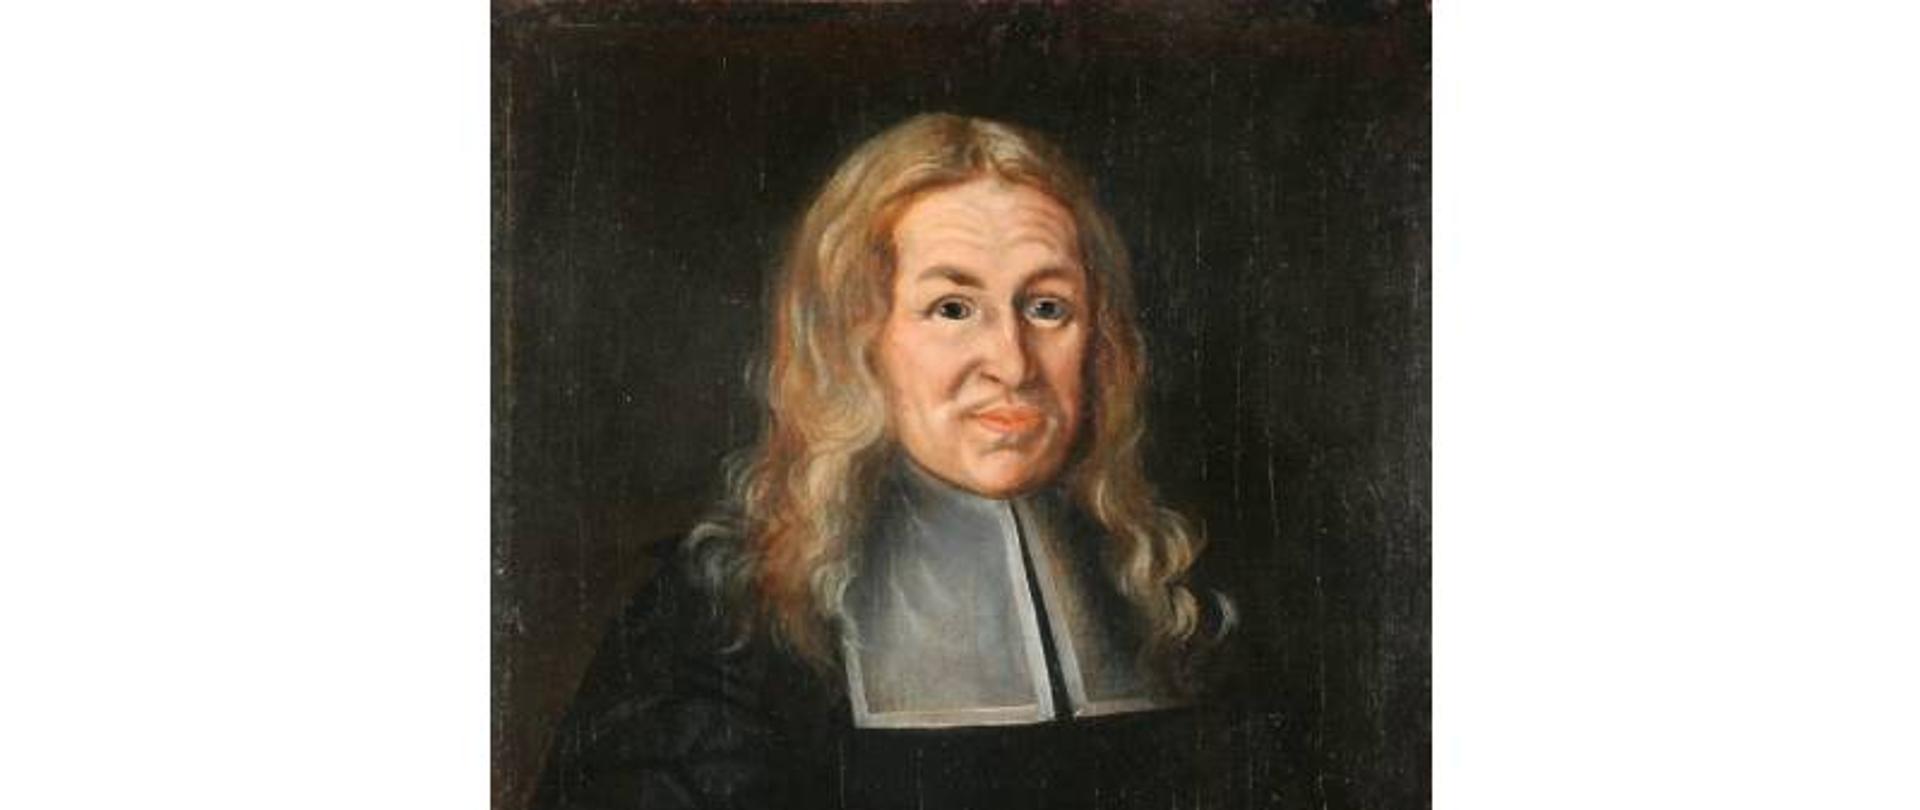 Artysta nieznany, Portret Wolfganga Scharschmidta, 1678
Muzeum Narodowe we Wrocławiu
